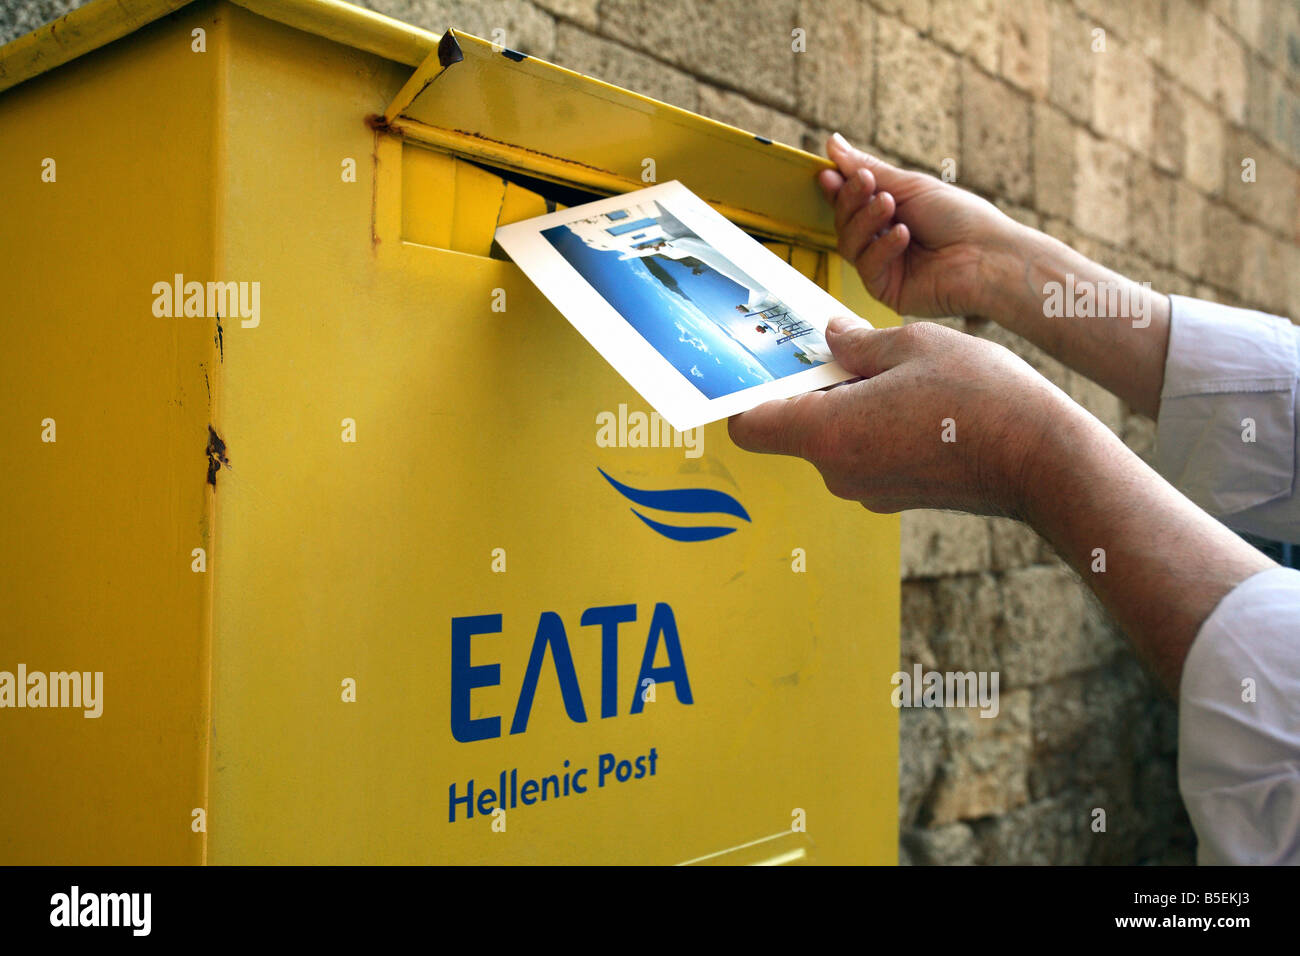 Man throwing une carte postale dans une boîte aux lettres jaune de la poste hellénique, Rhodes, Grèce Banque D'Images